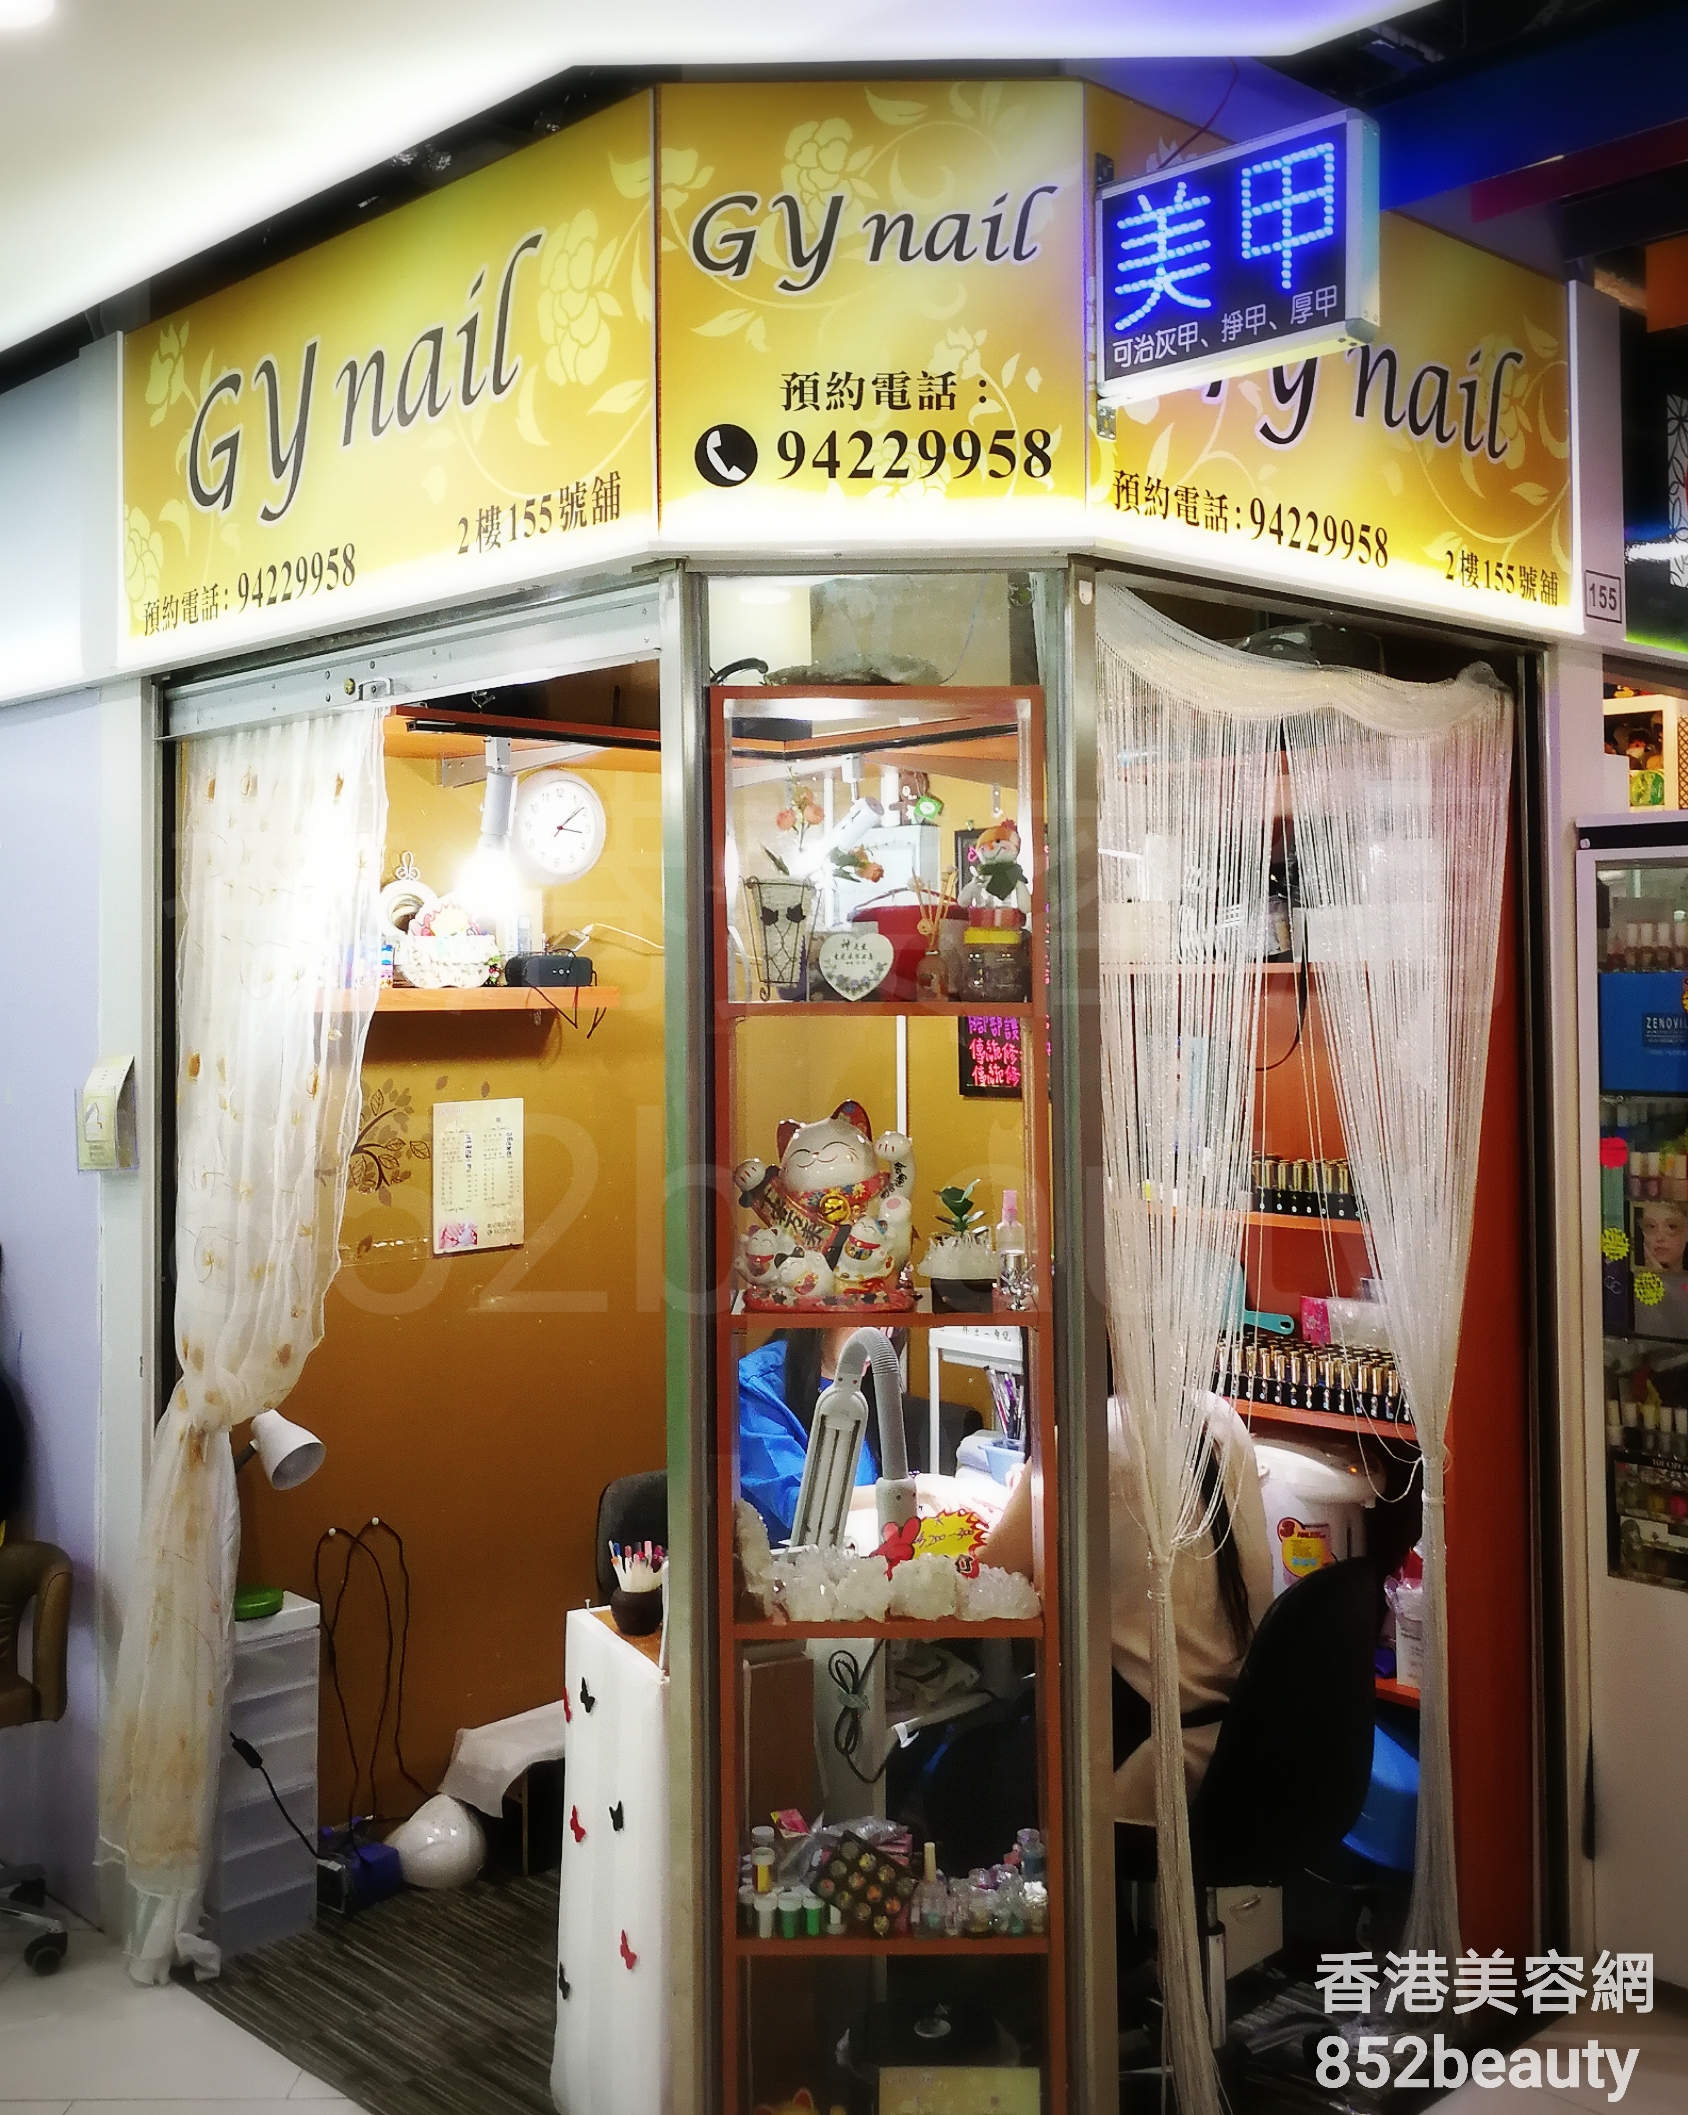 香港美容網 Hong Kong Beauty Salon 美容院 / 美容師: GY Nail